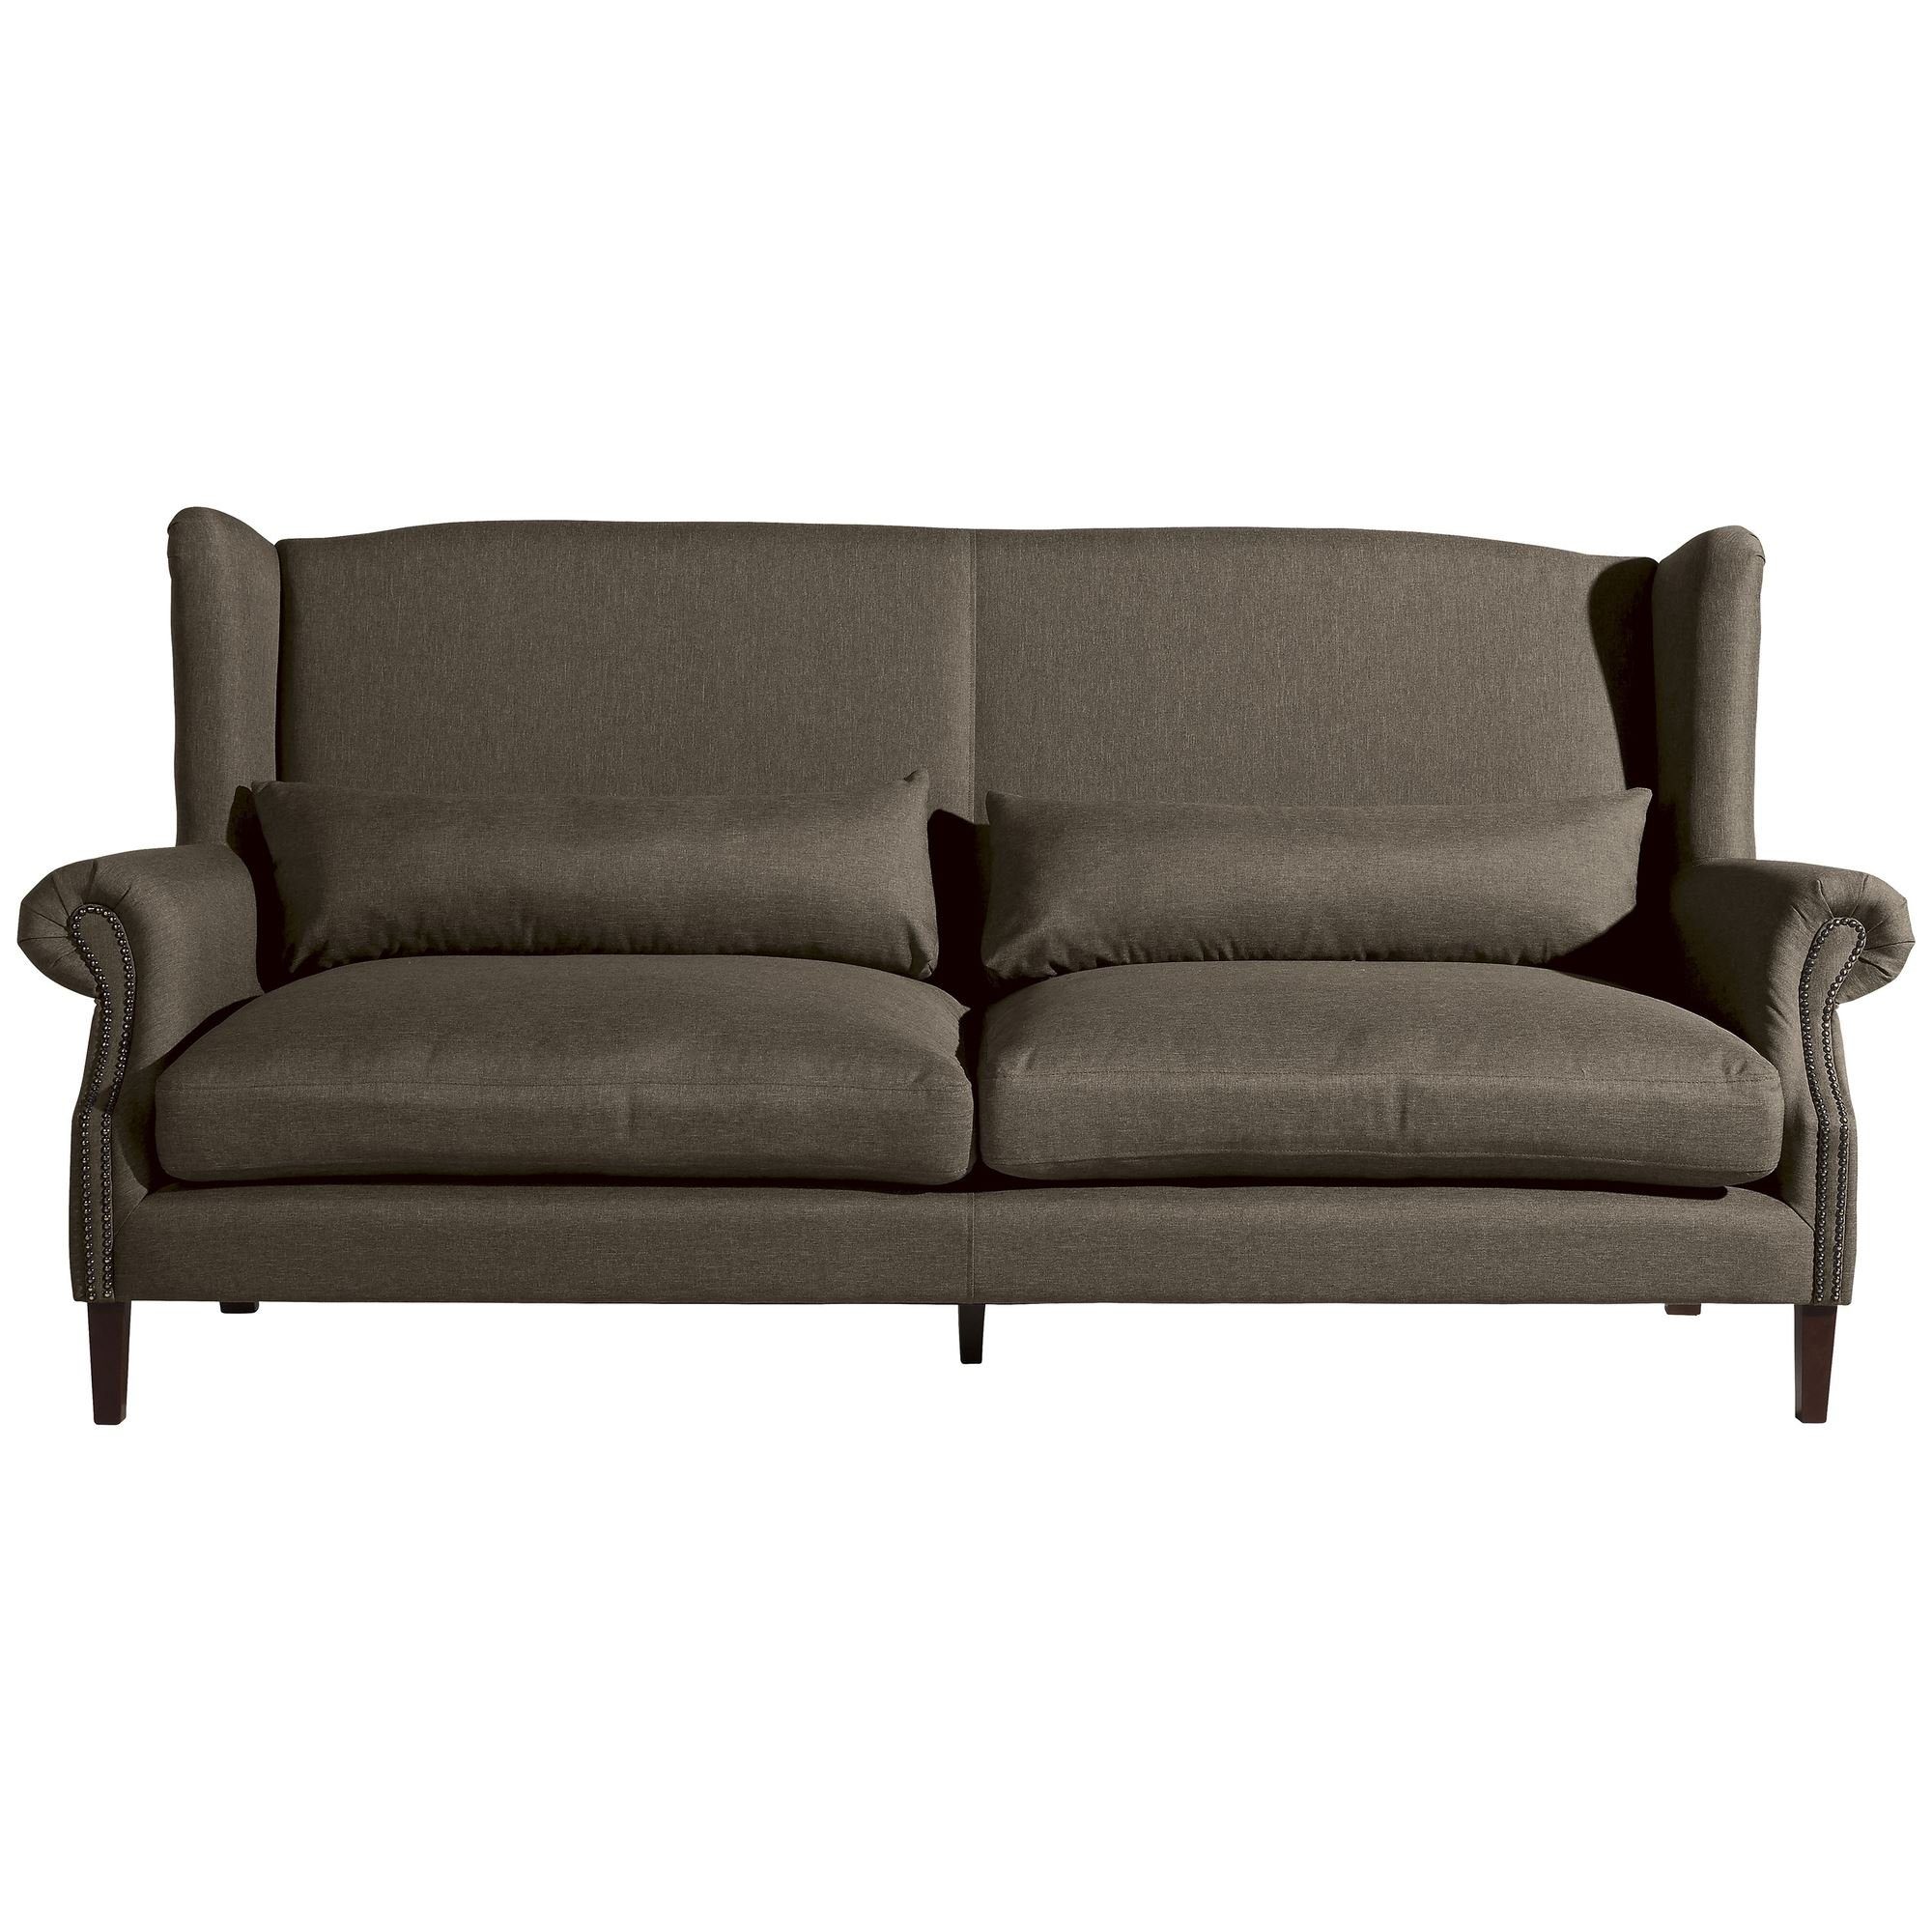 Kostenlosem Sparpreis aufm 58 Sofa verarbeitet,bequemer inkl. Bezug 1 (2-geteilt) hochwertig Versand Kandy Flachgewebe, Kessel Teile, Sitz Sofa 3-Sitzer